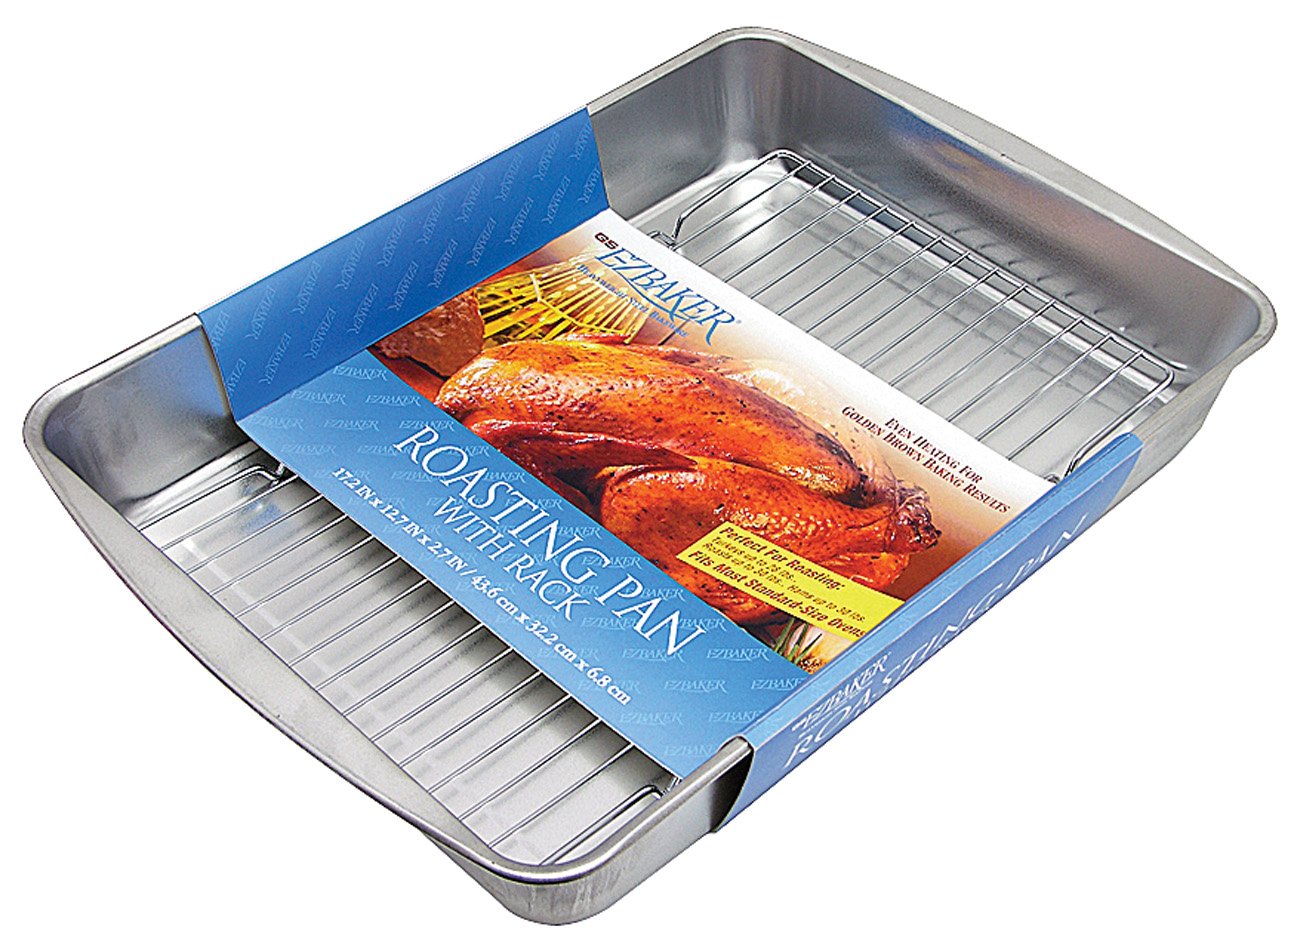 EZ Foil Rack 'N' Roast Roaster Pan with Handles – Hemlock Hardware